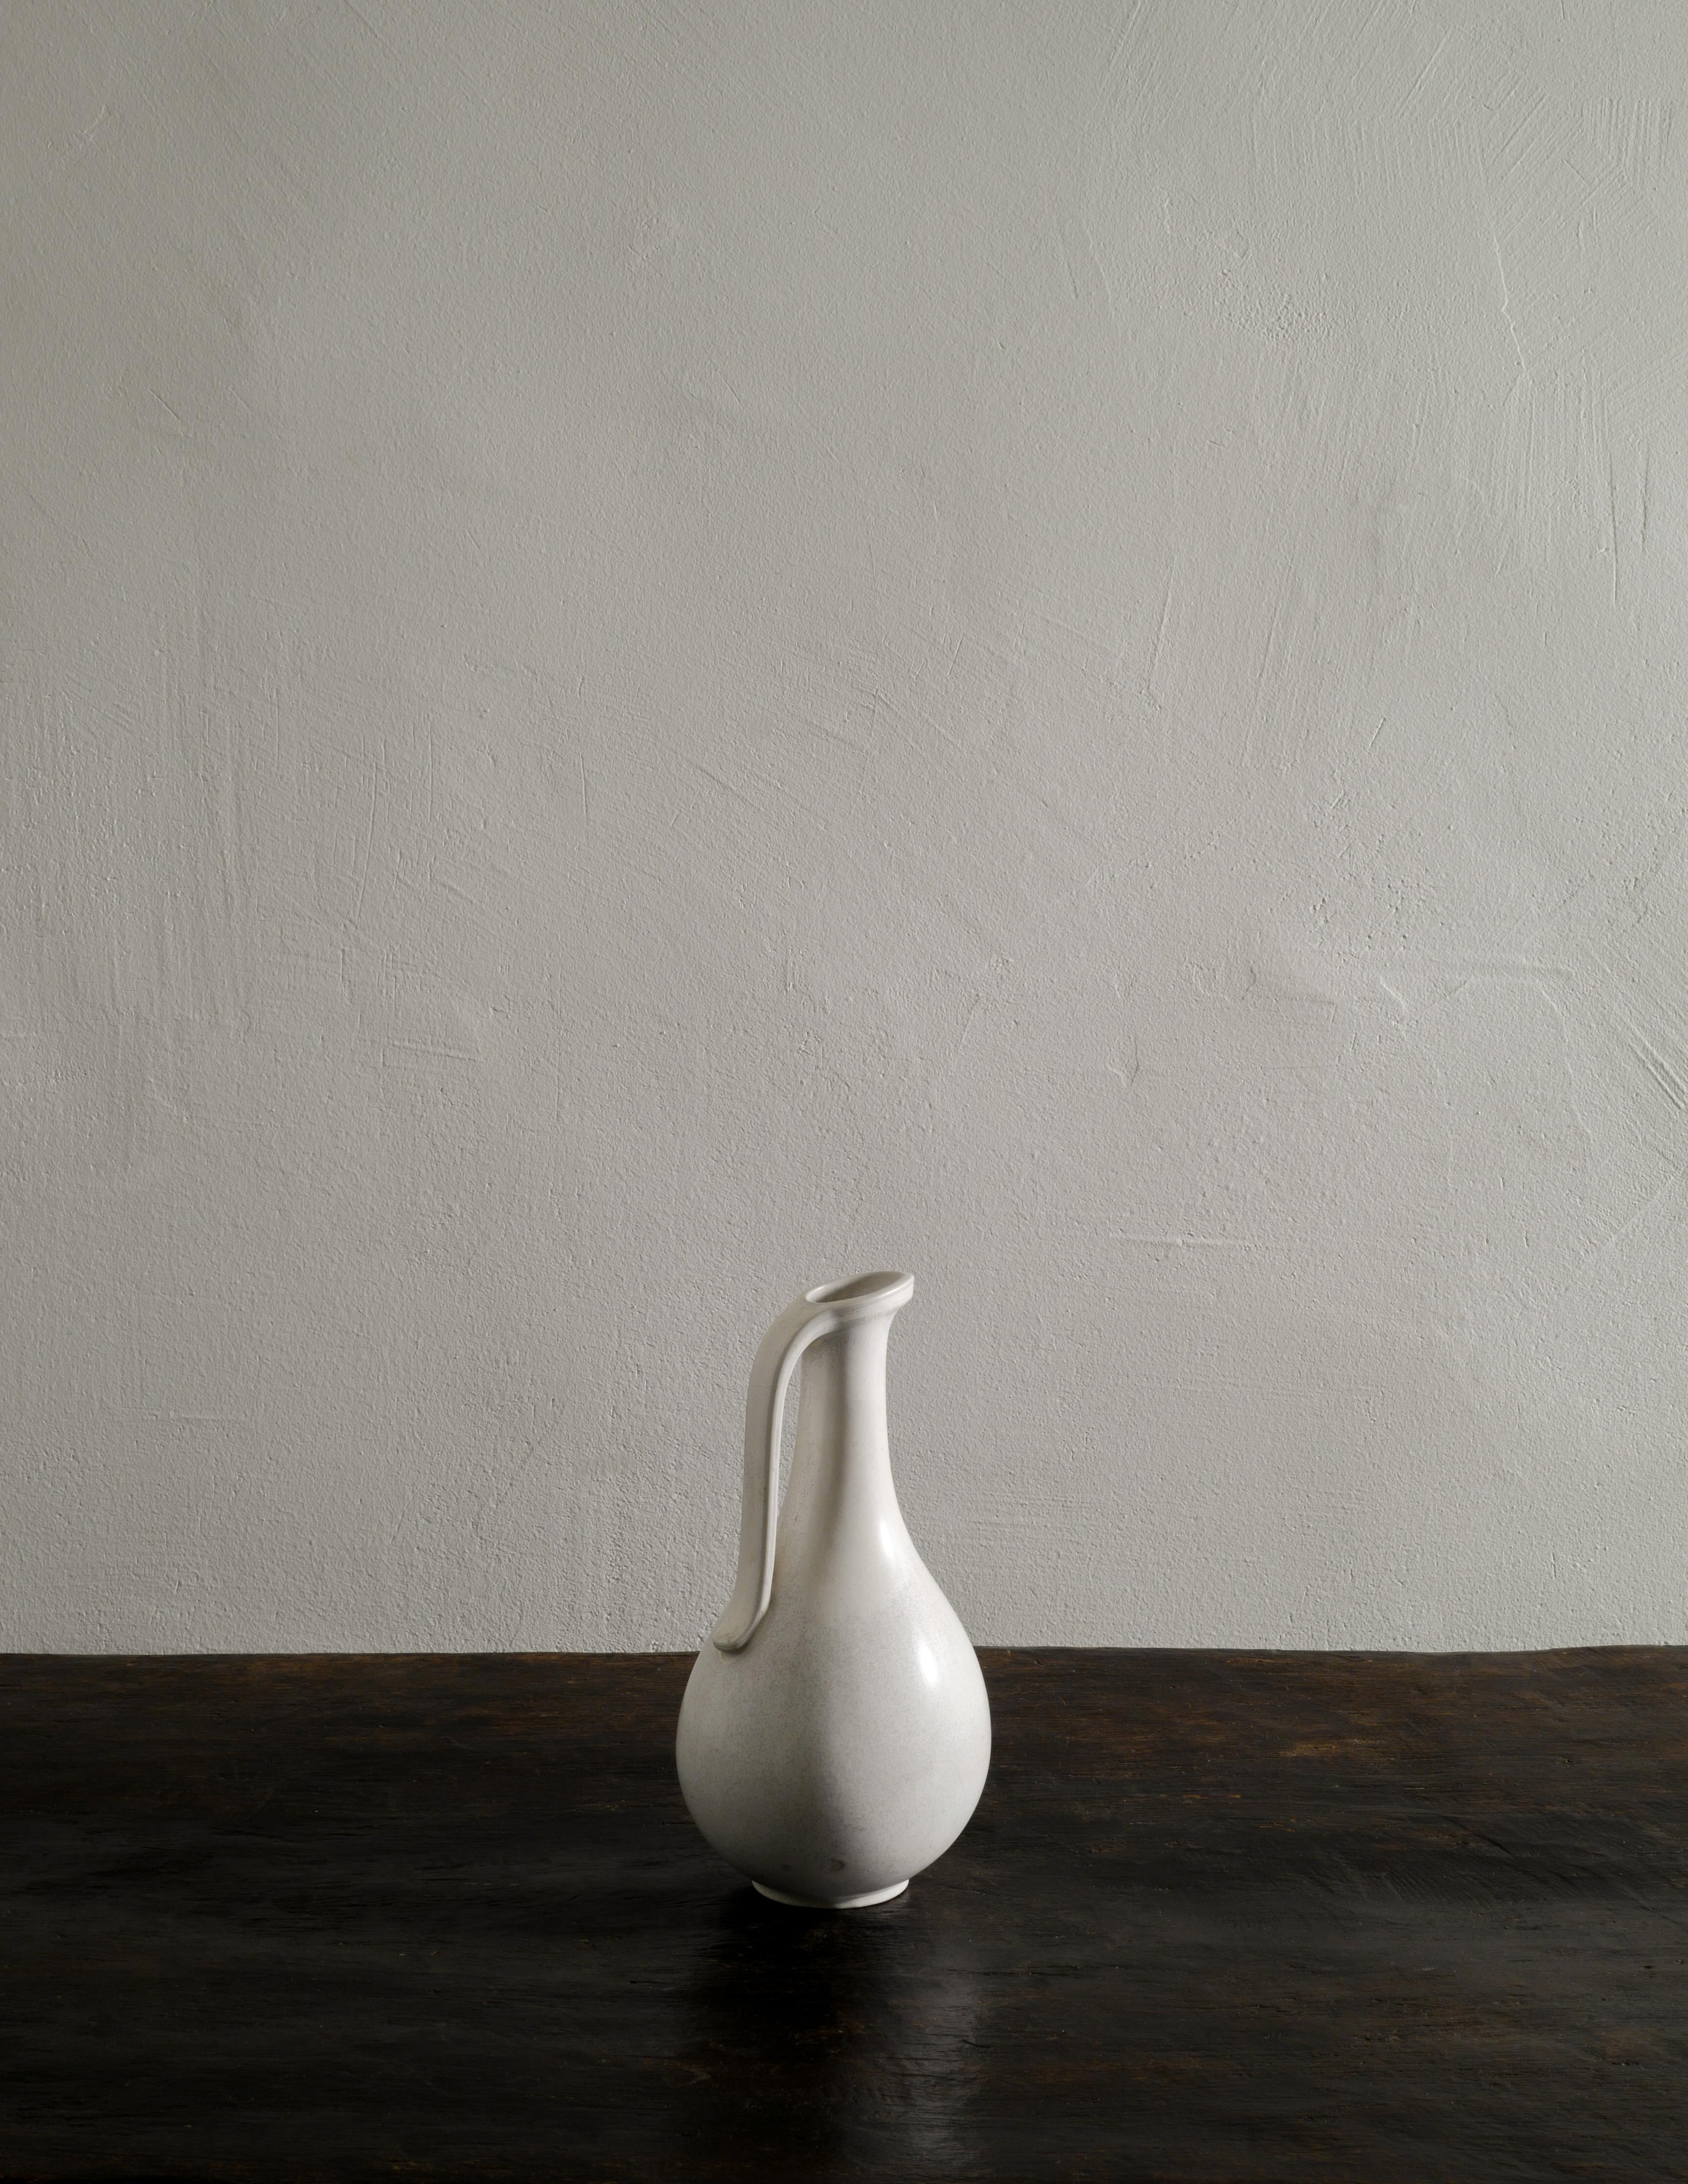 Seltene weiße Keramik / Steinzeug Krug Mitte des Jahrhunderts von Gunnar Nylund für Rörstrand Schweden in den 1950er Jahren hergestellt. In gutem Vintage- und Originalzustand mit kleinen Alters- und Gebrauchsspuren. Es sind einige 